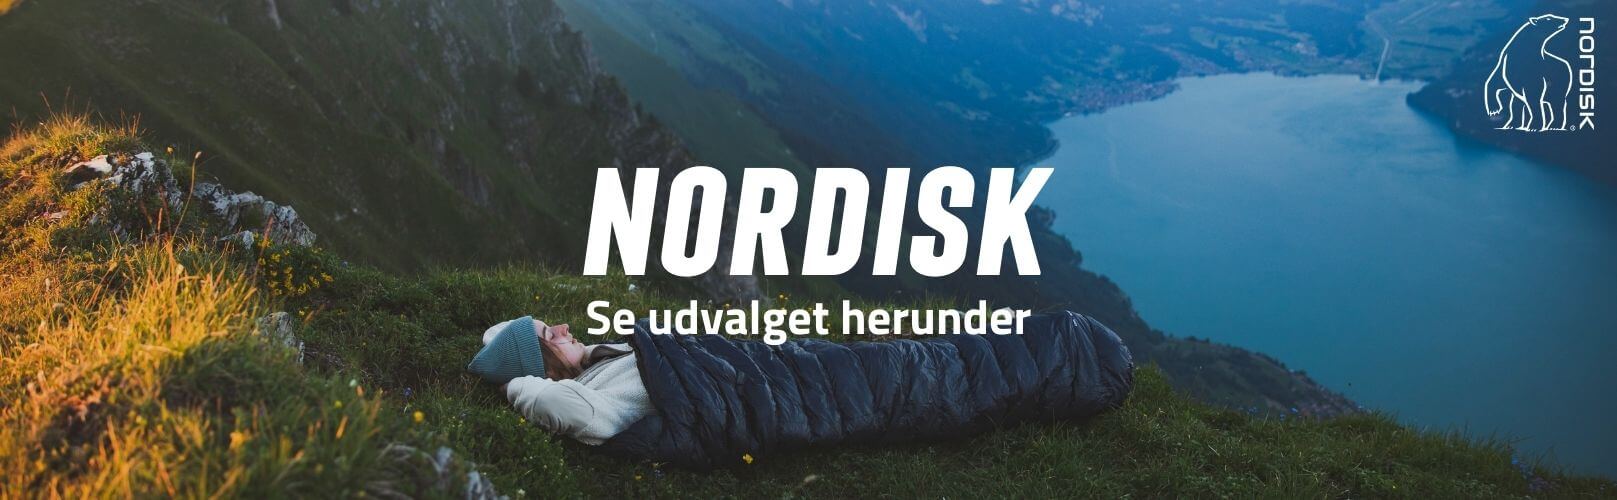 Nordisk brand banner